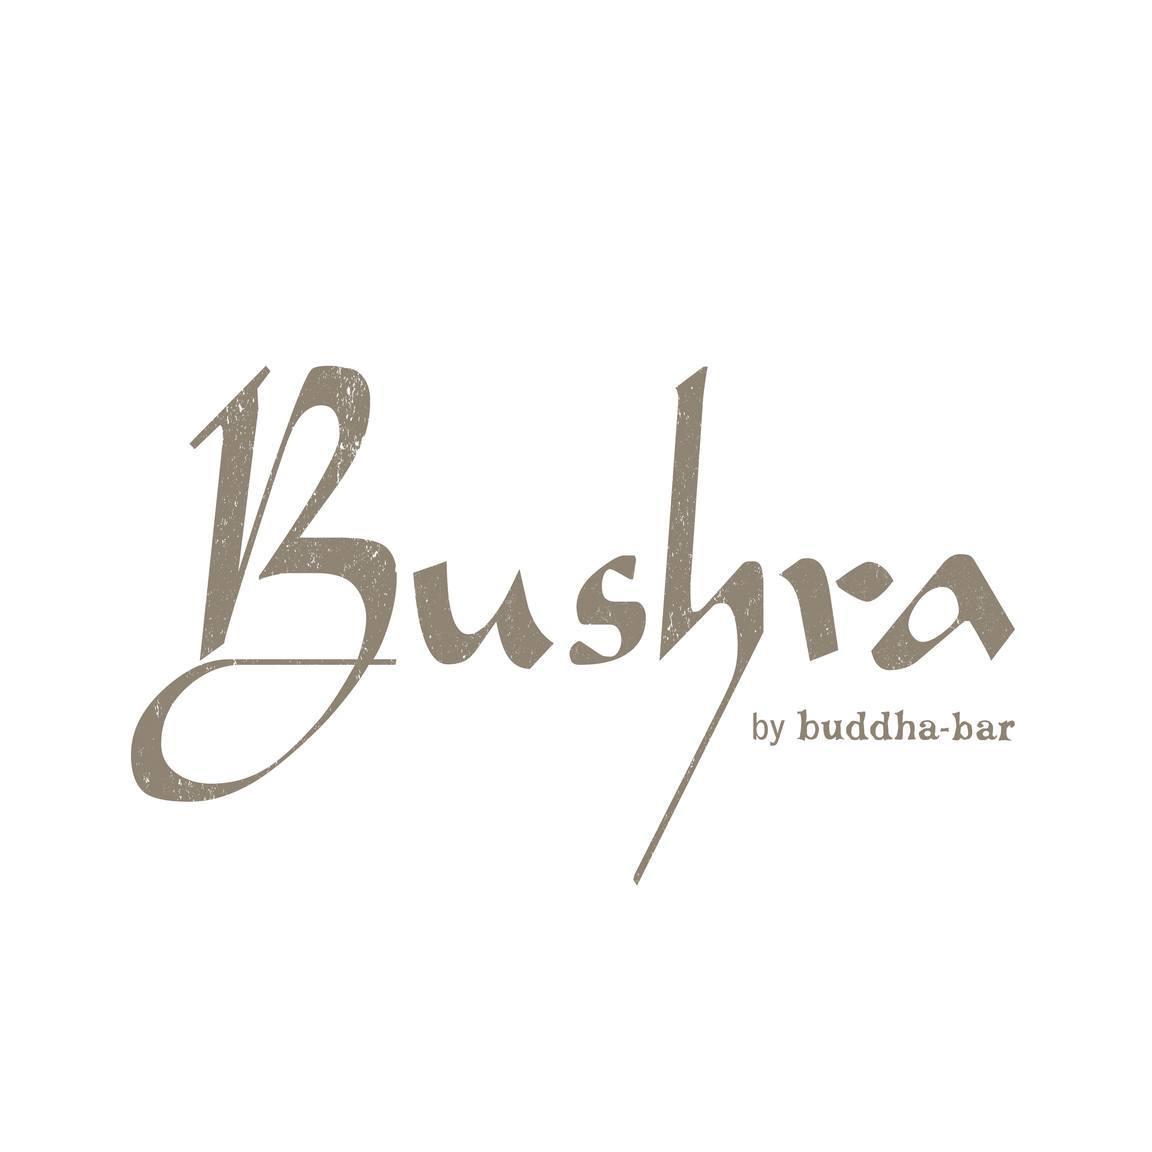 Bushra by Buddha-Bar